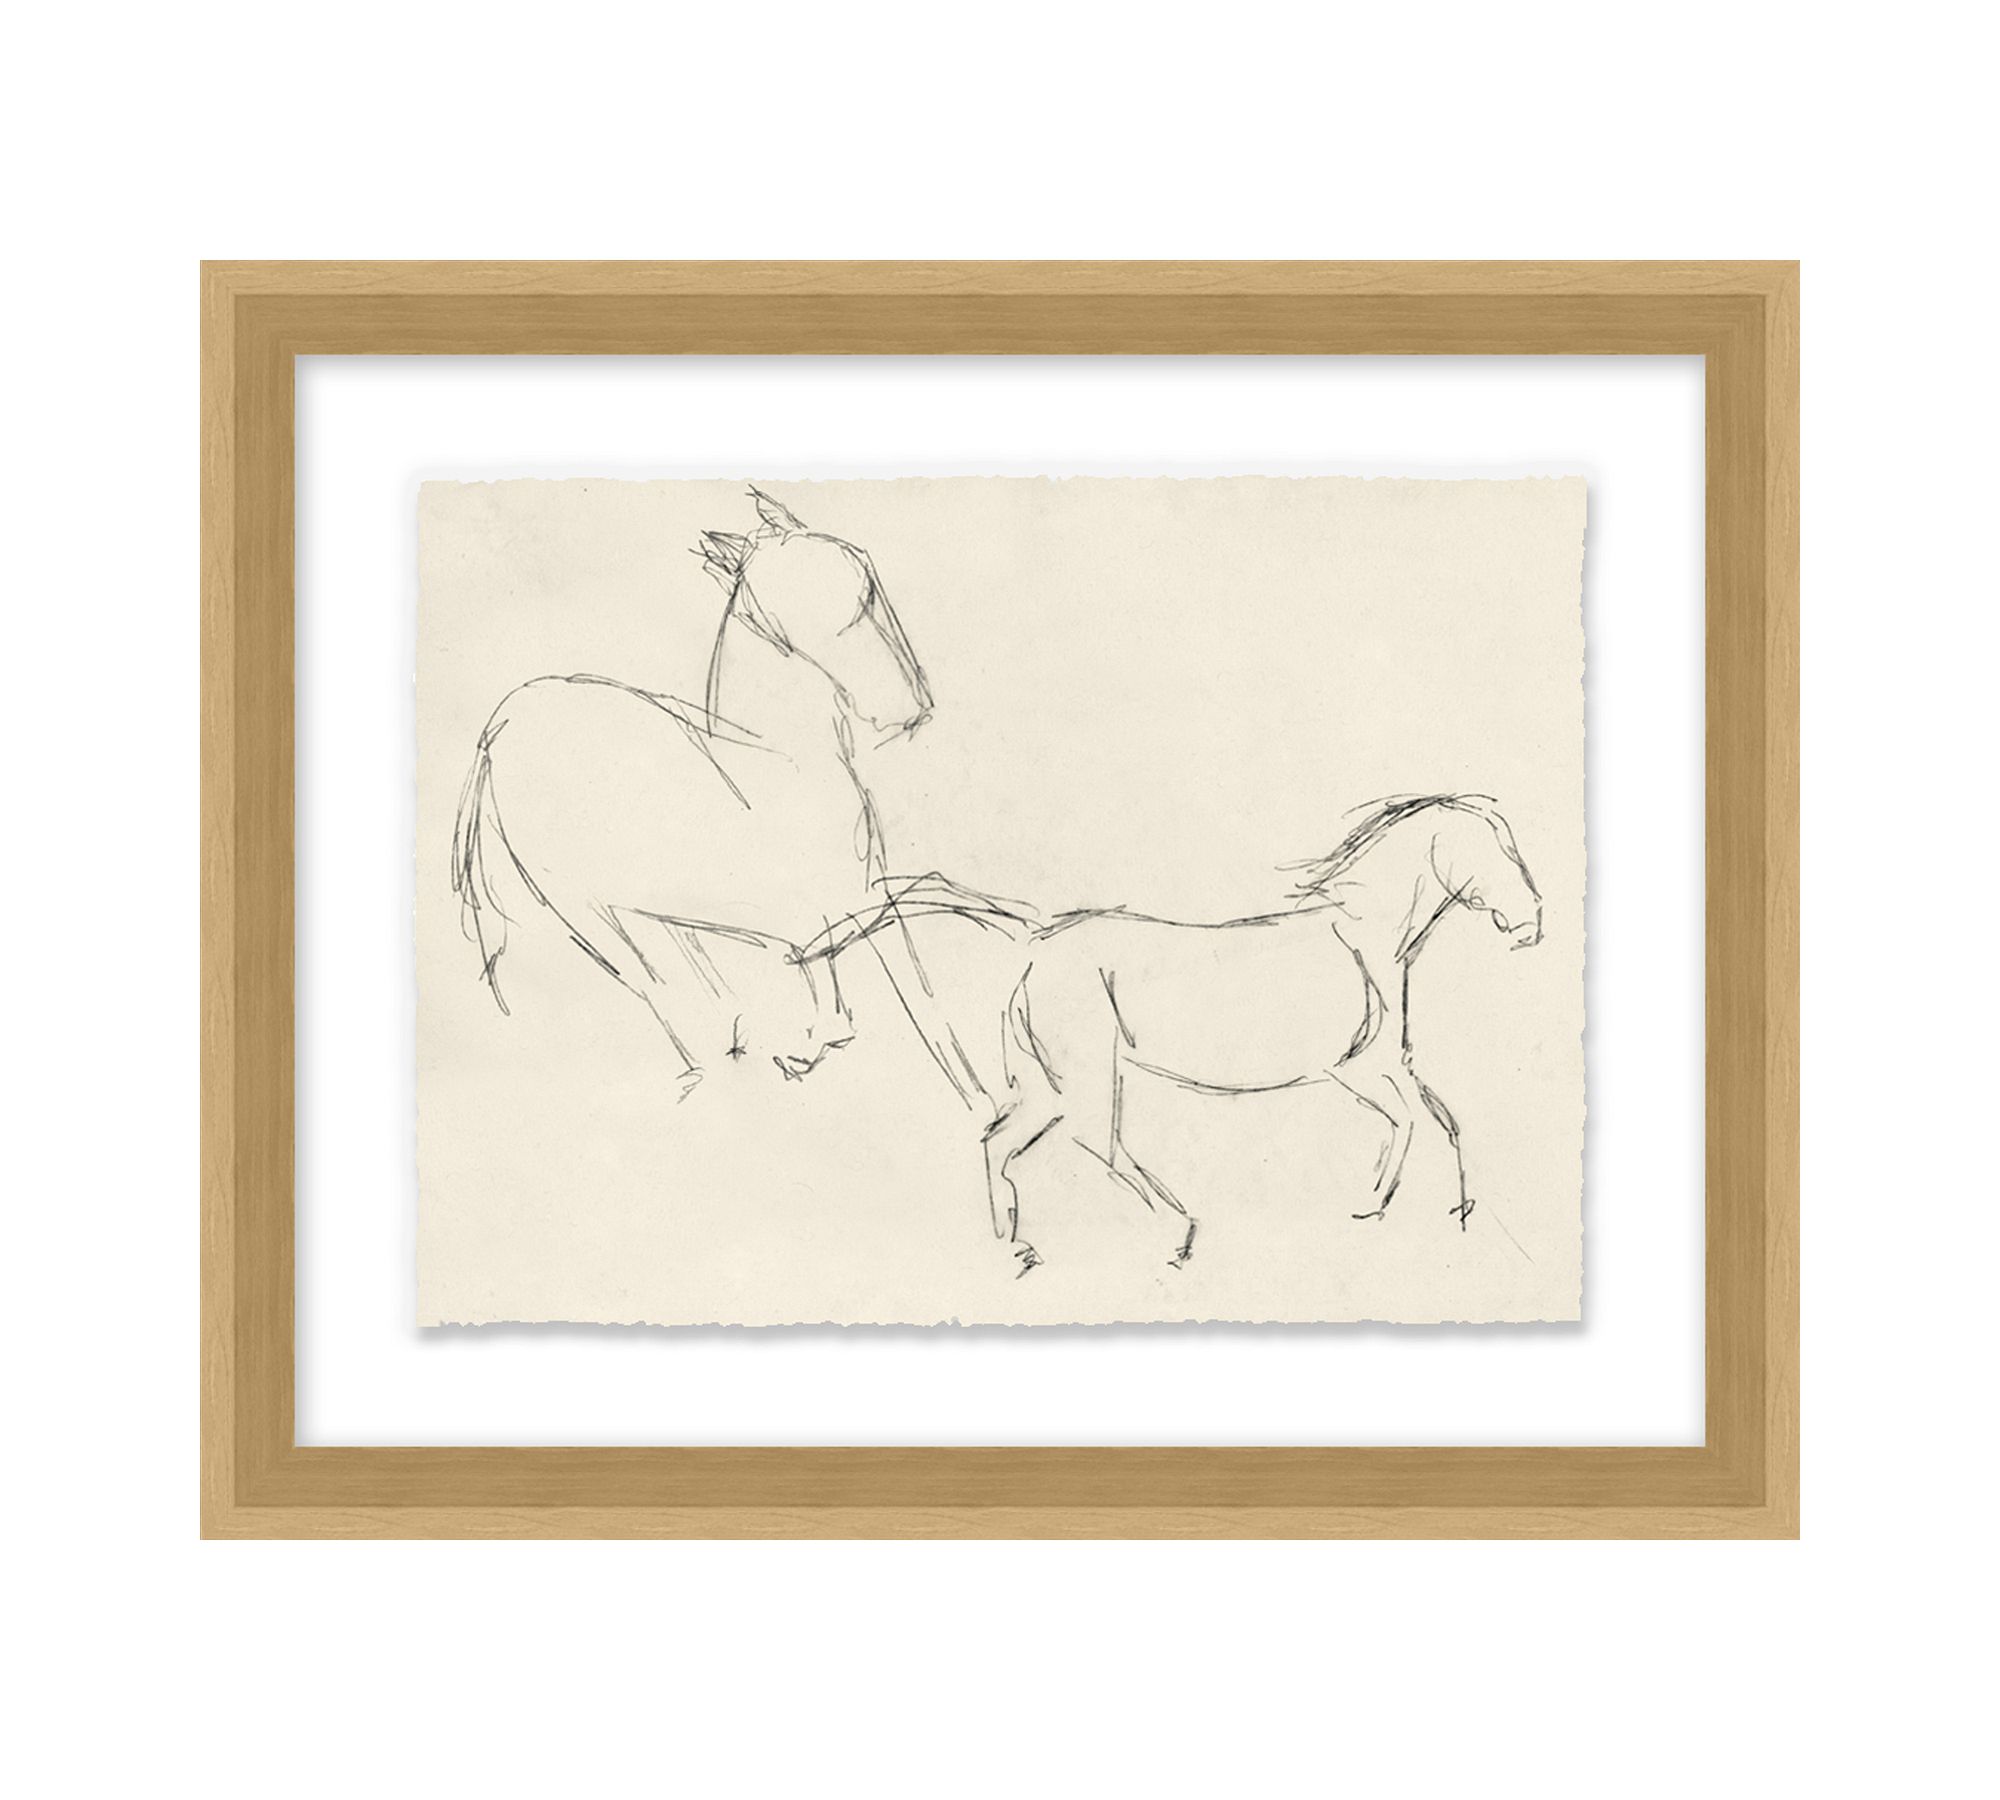 Horse Artist Sketch Print Wall Art